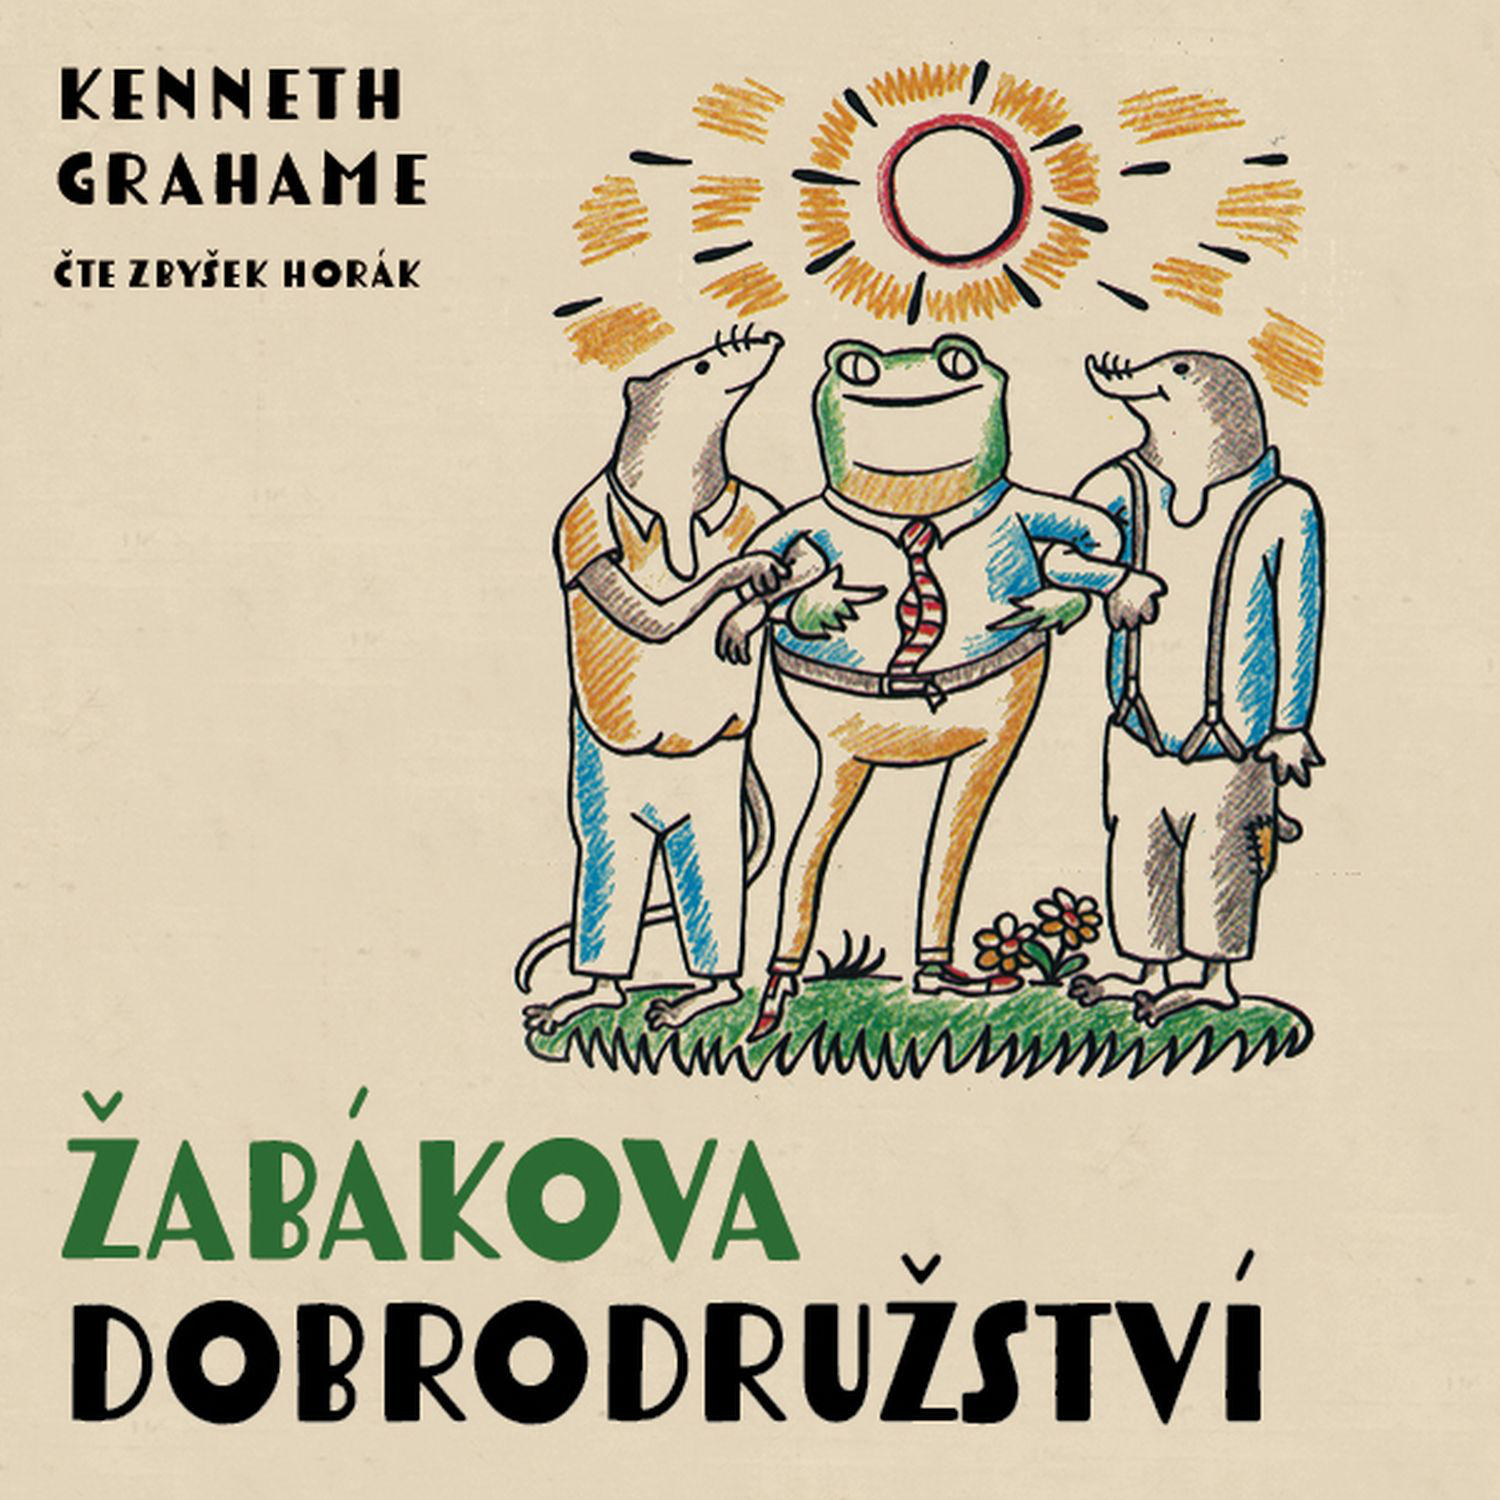 CD Shop - HORAK ZBYSEK GRAHAME: ZABAKOVA DOBRODRUZSTVI (MP3-CD)